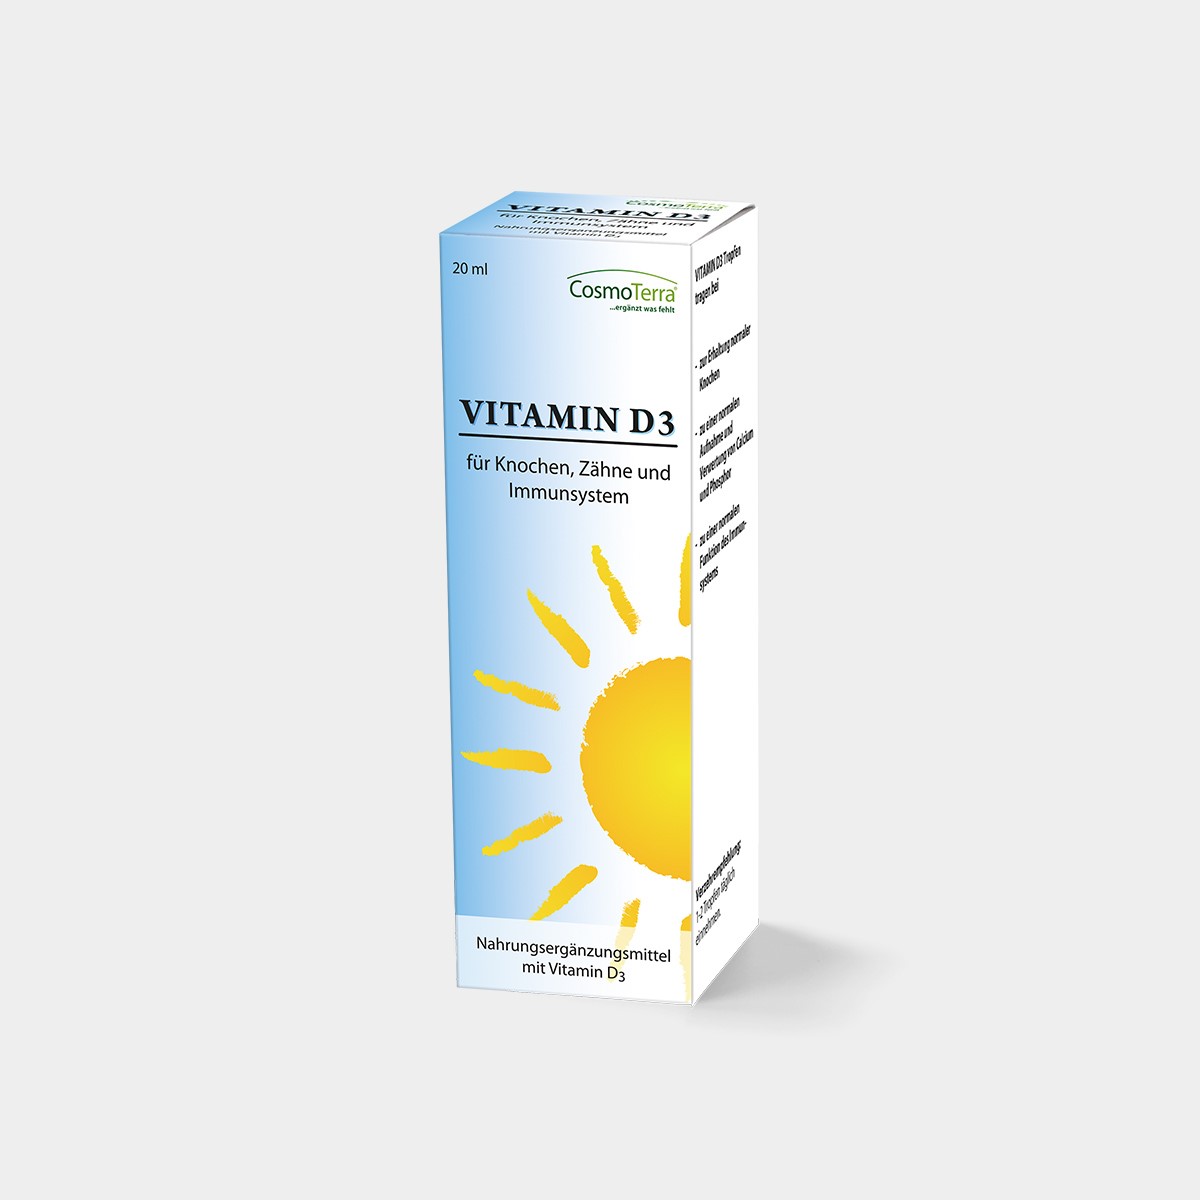 370120_VitaminD3